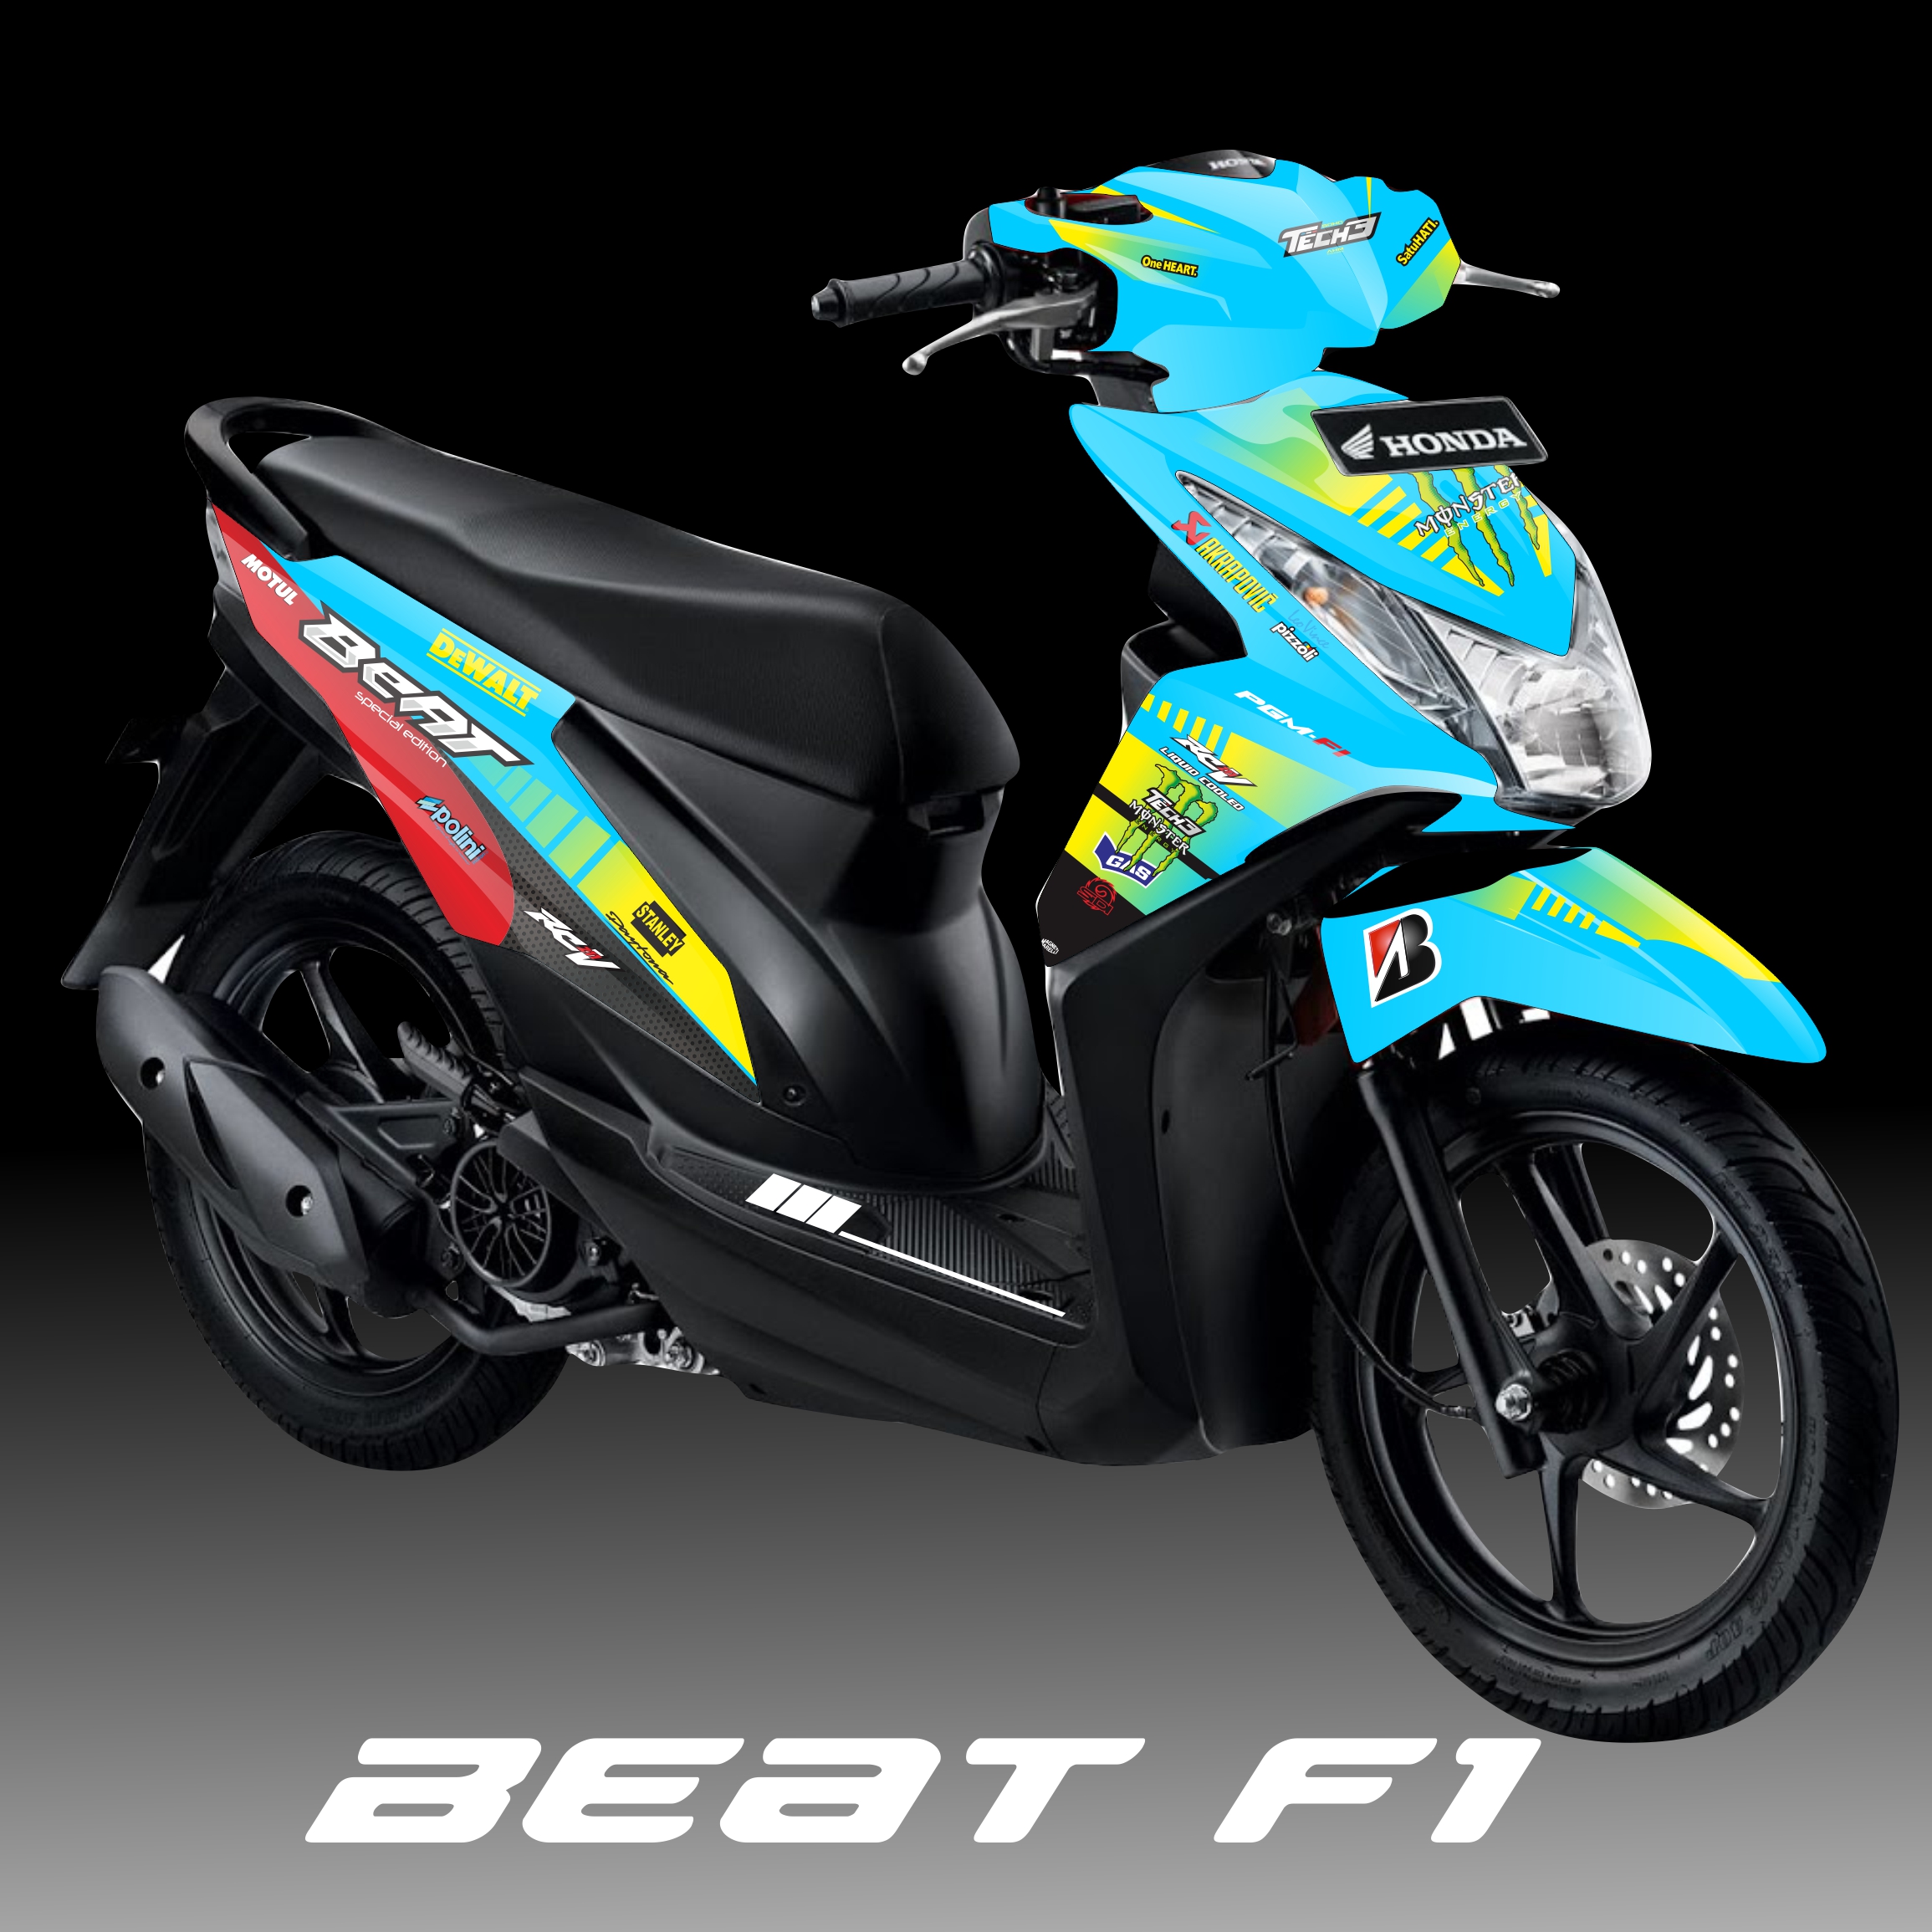 Decal Stiker Full Body Honda Beat F1 Desain Motif Racing Lazada Indonesia